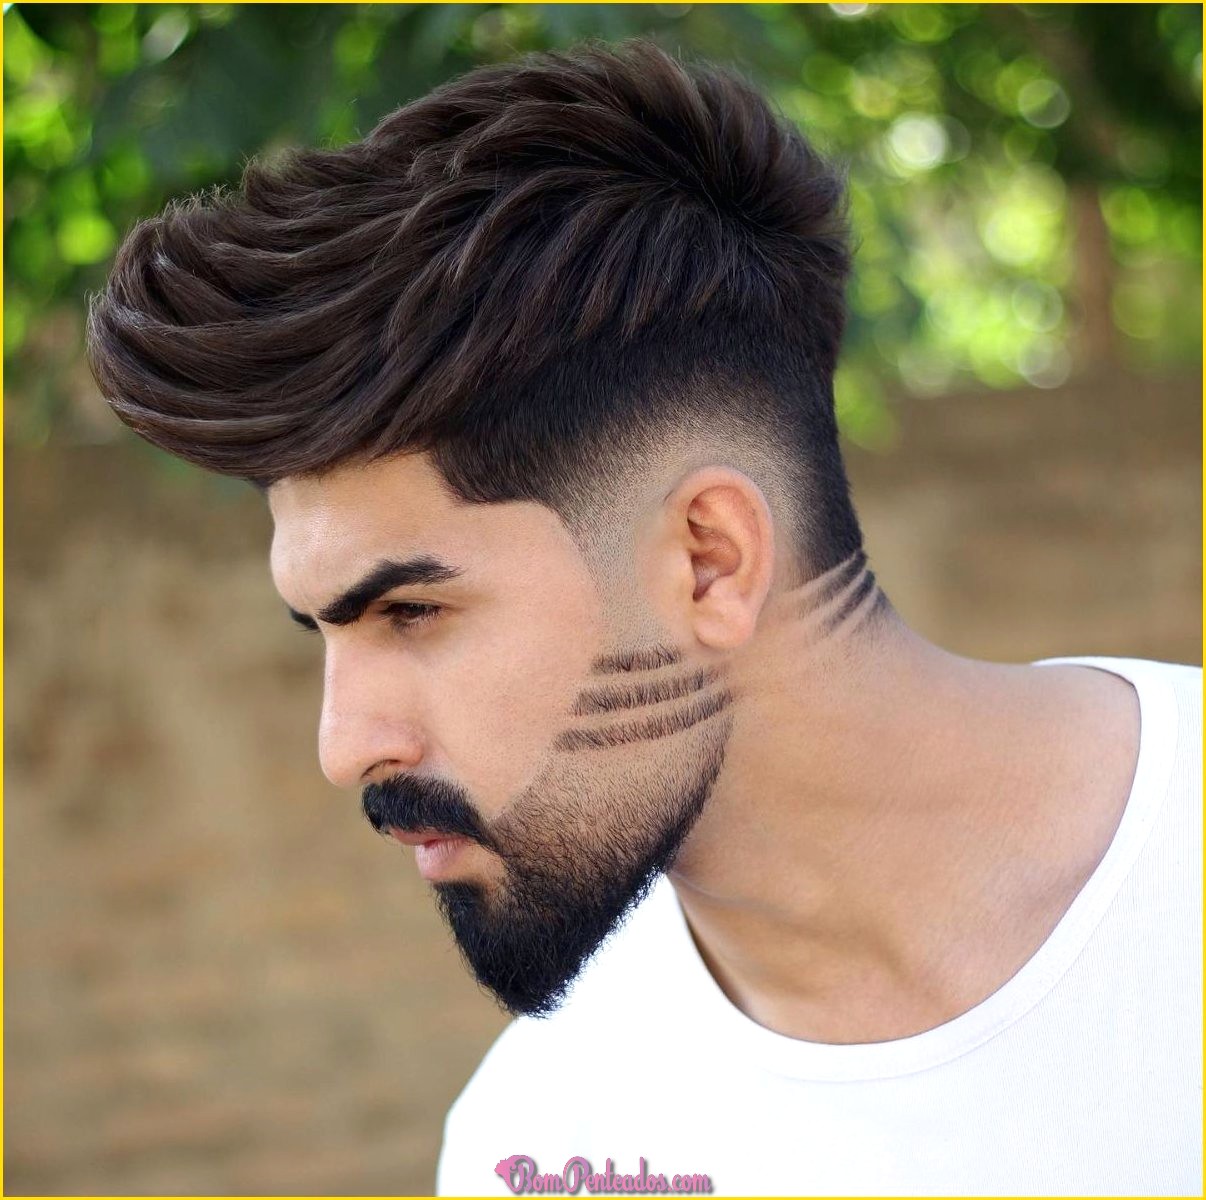 Penteados para homens jovens sem barba